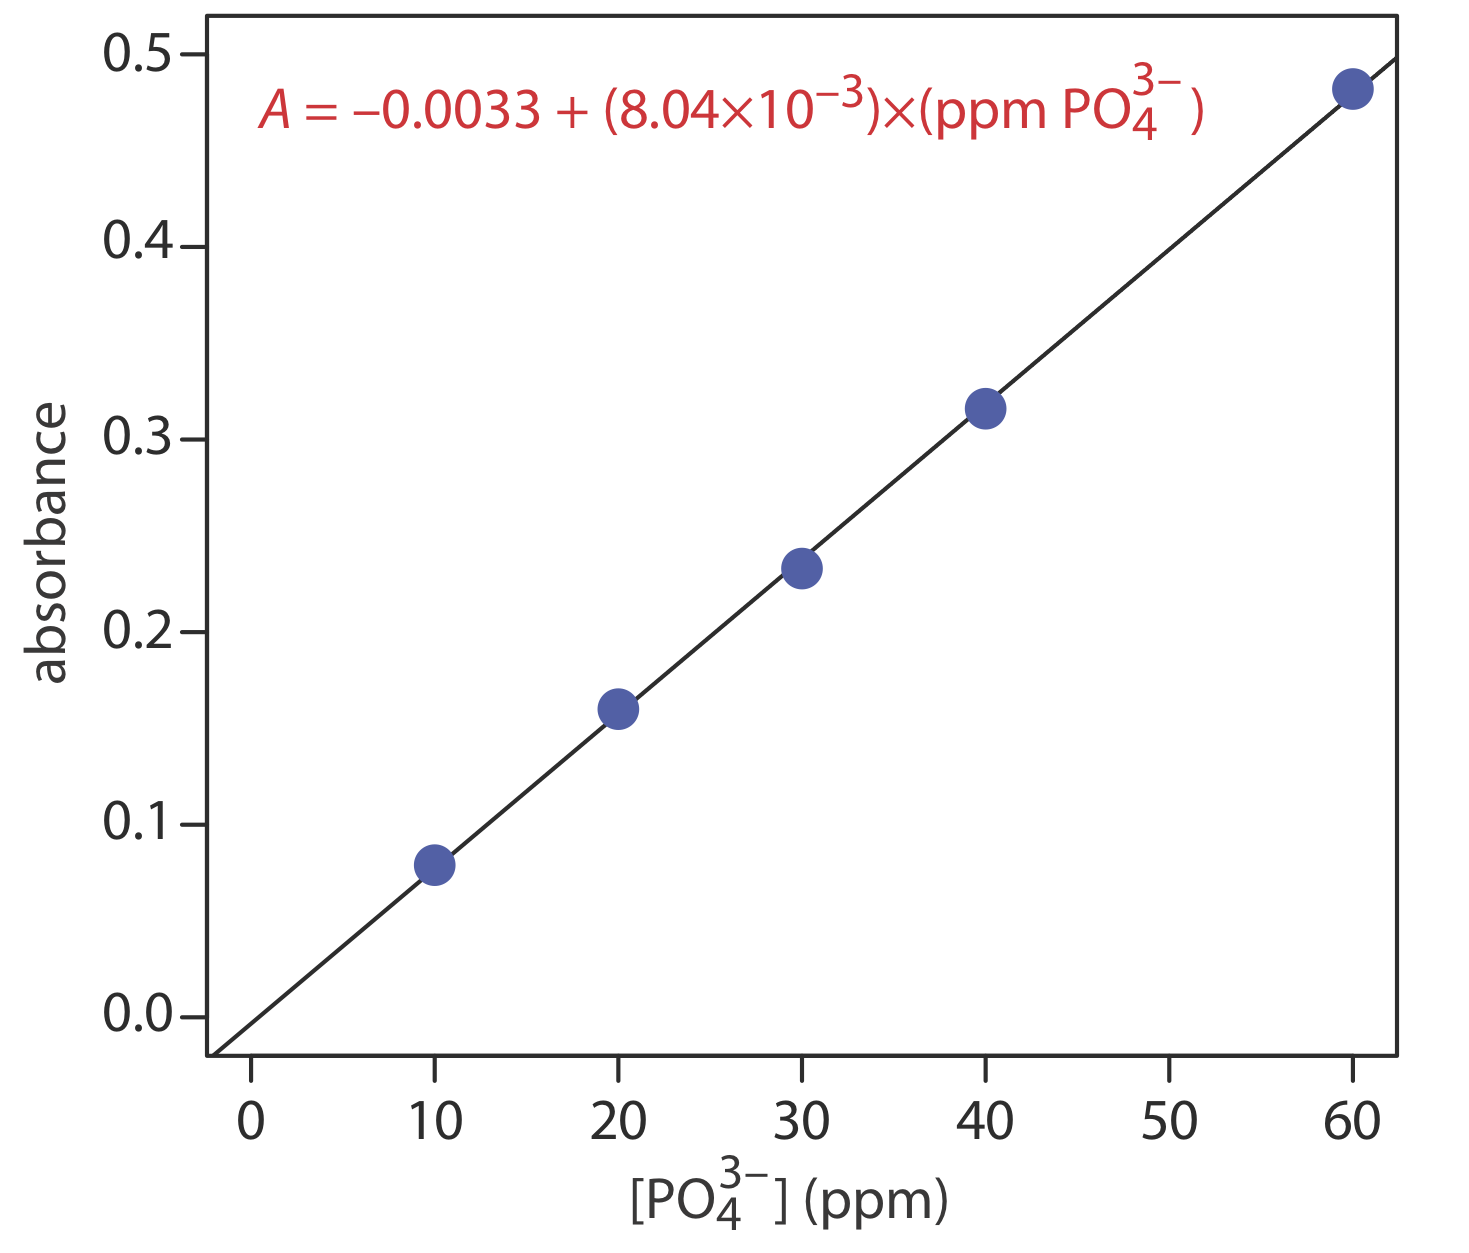 A=-0.0033+ (8.04x10^-3) x (ppm PO4 (3-)).